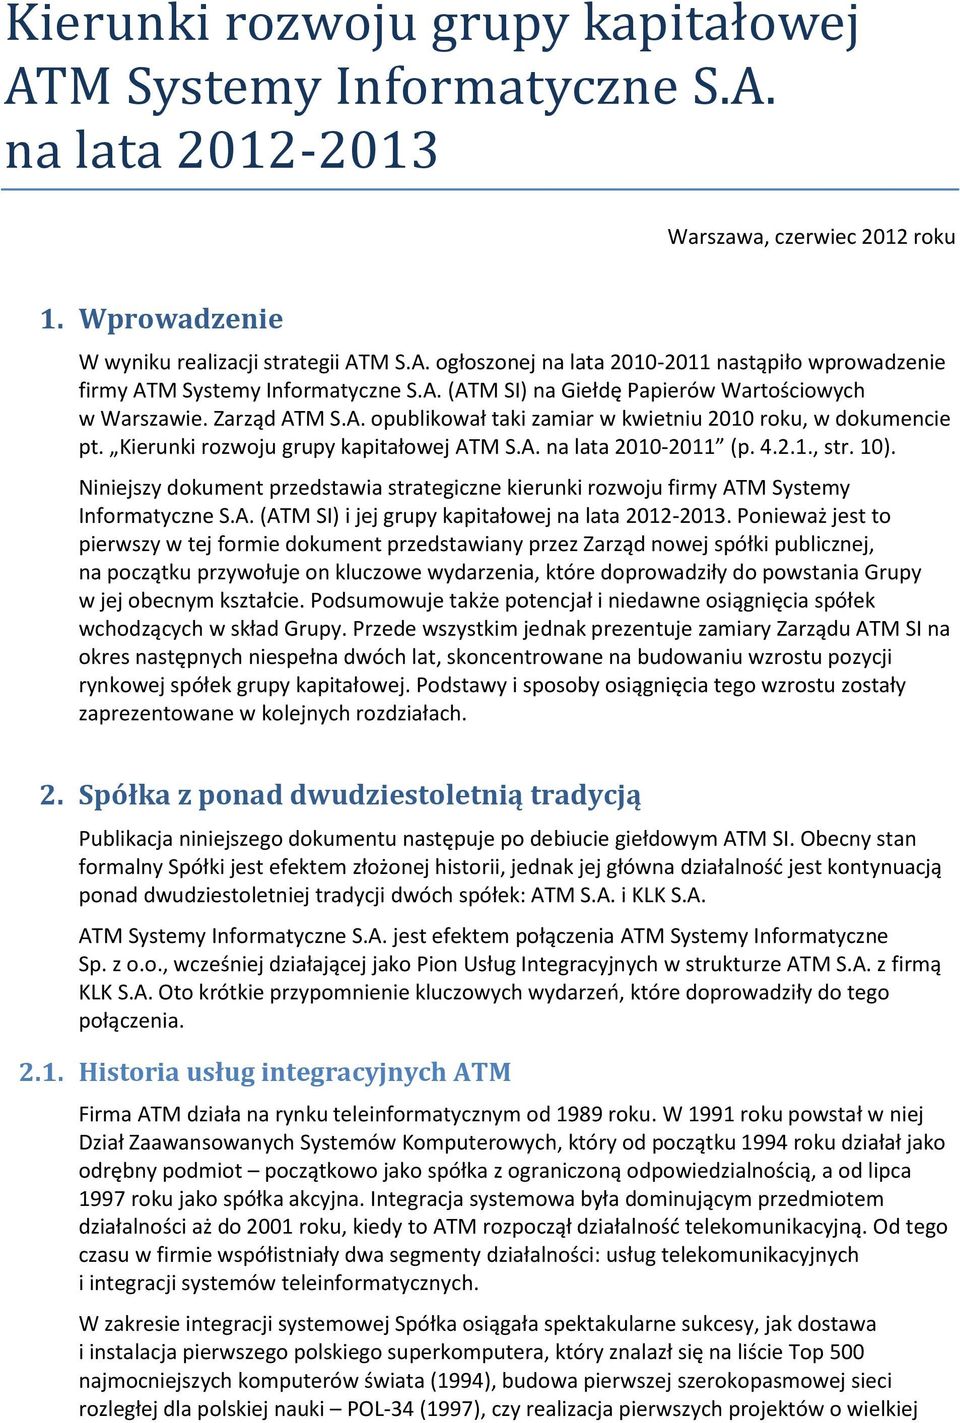 4.2.1., str. 10). Niniejszy dokument przedstawia strategiczne kierunki rozwoju firmy ATM Systemy Informatyczne S.A. (ATM SI) i jej grupy kapitałowej na lata 2012-2013.